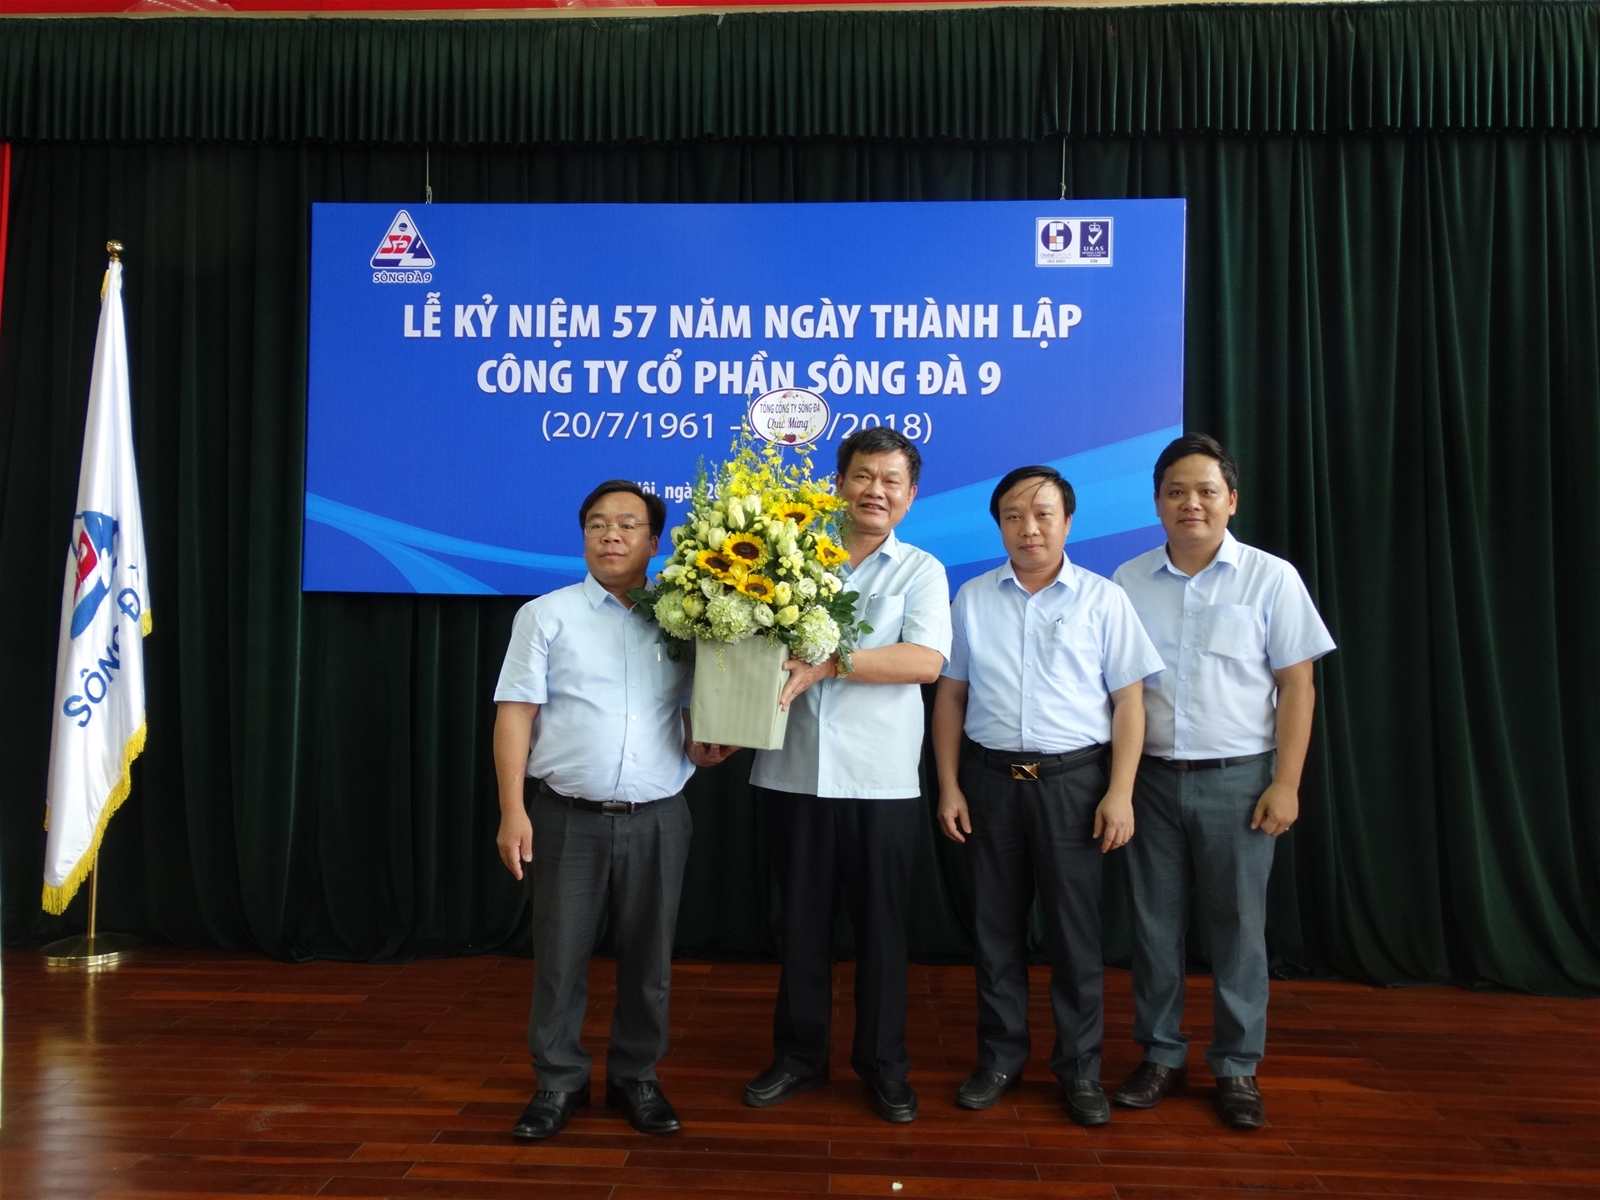 Sông Đà 9 tổ chức kỷ niệm 57 năm ngày thành lập công ty (20/7/1961 – 20/7/2018)